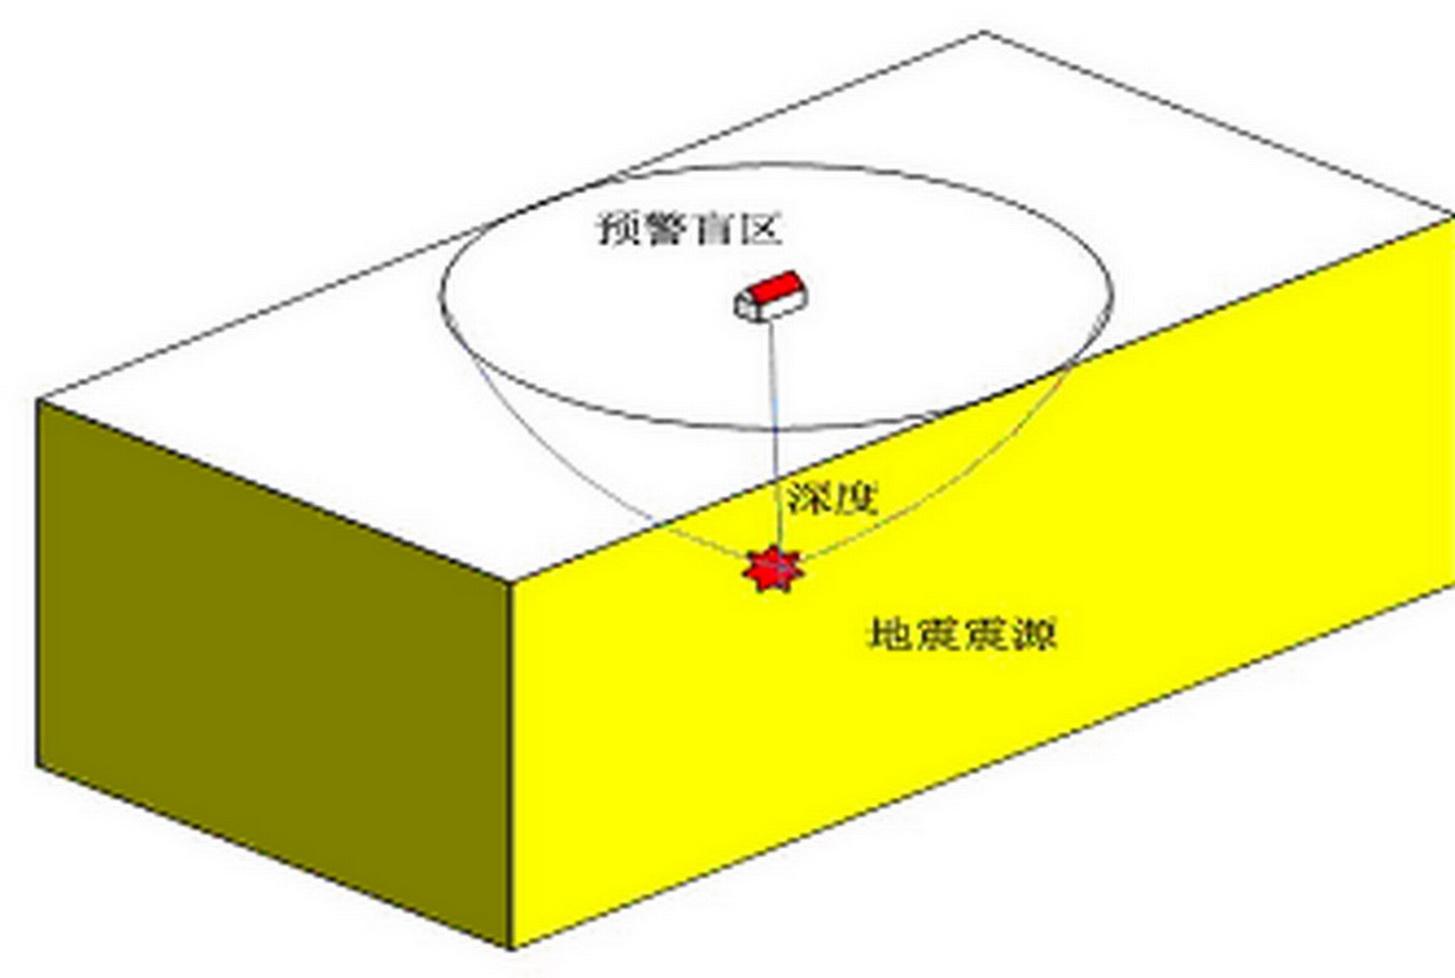 图4  地震预警盲区示意图图4是地震预警盲区的示意图